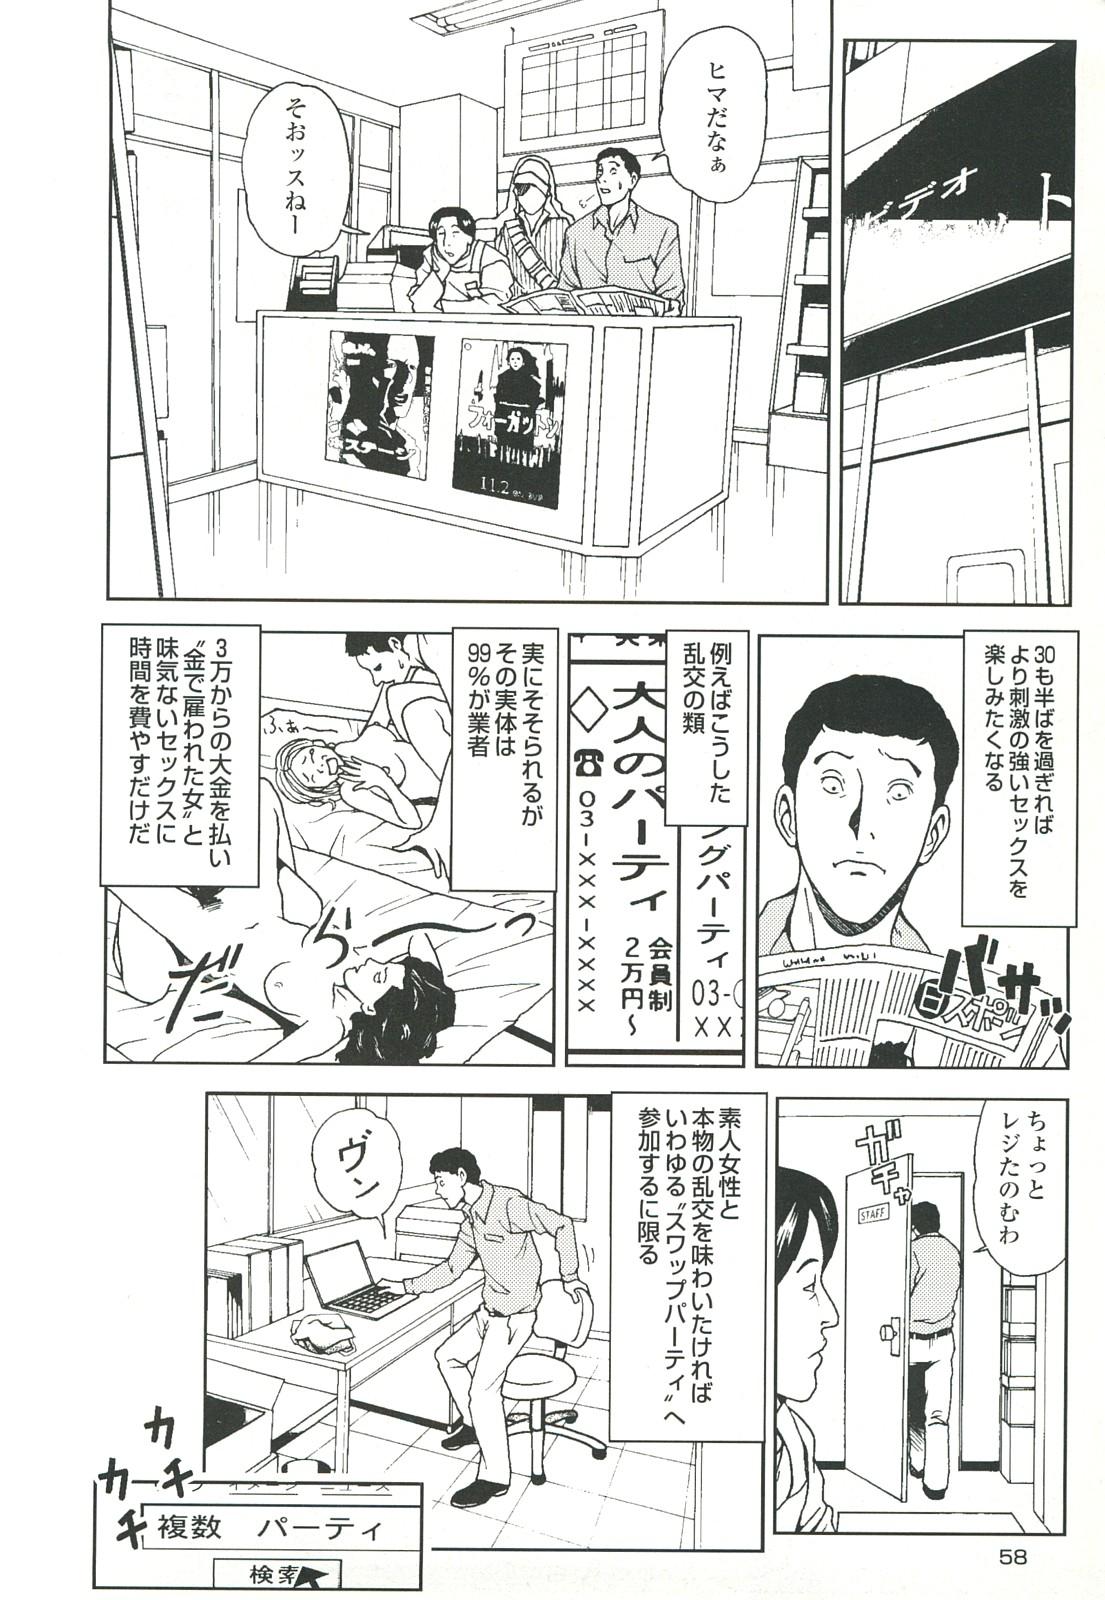 コミック裏モノJAPAN Vol.18 今井のりたつスペシャル号 57